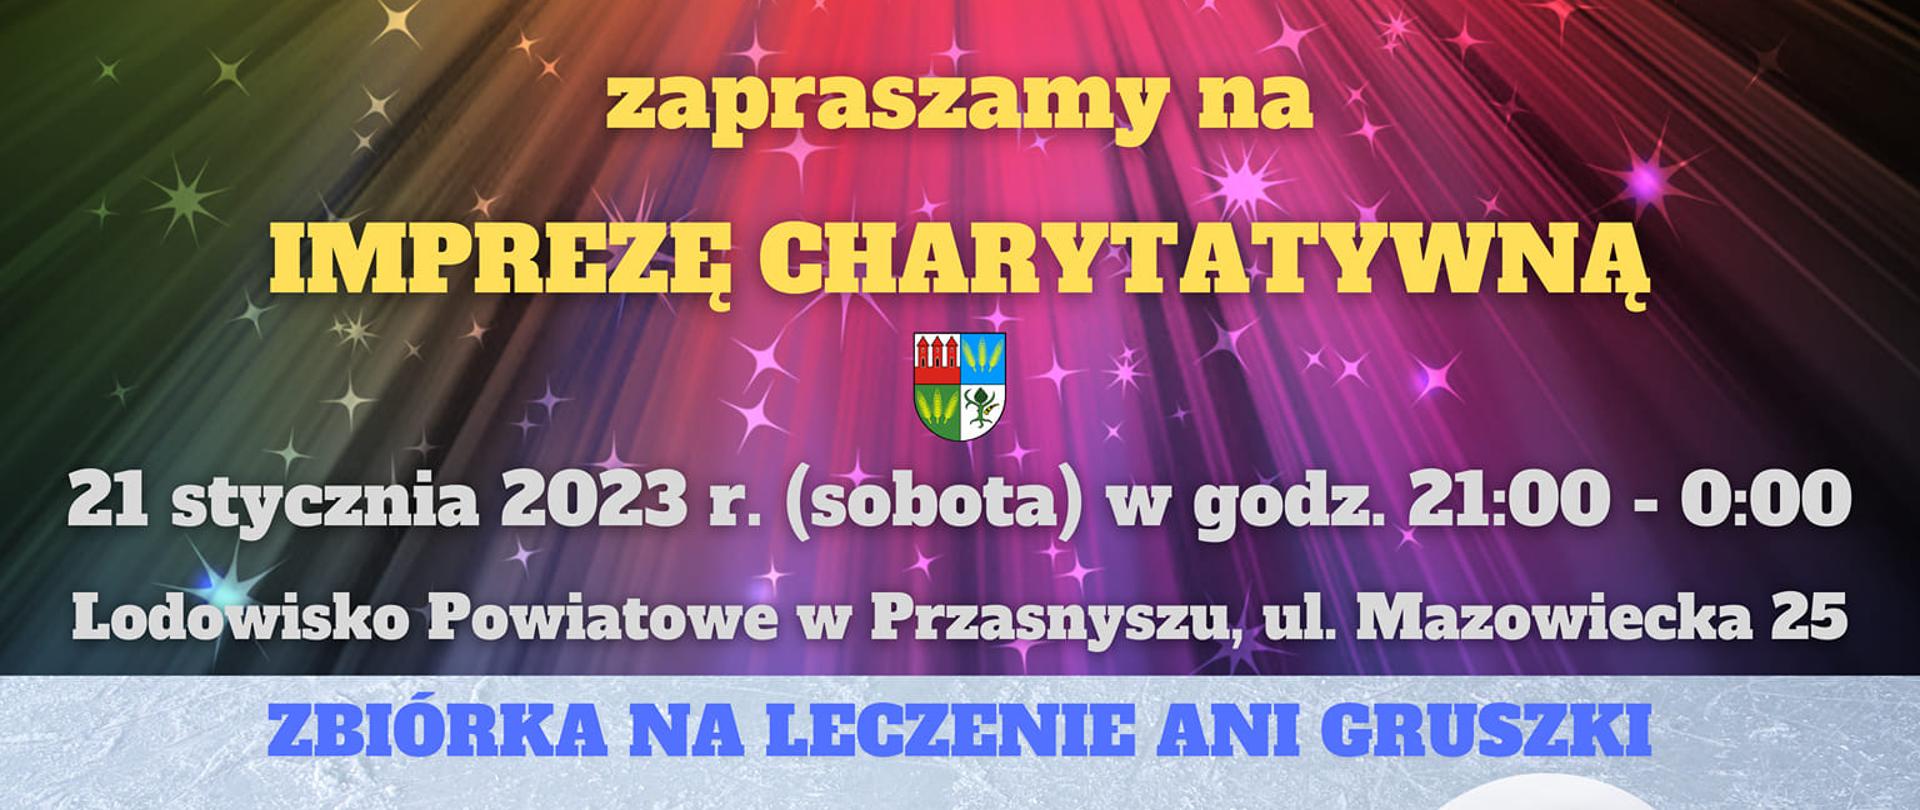 Plakat zapraszający do udziału w imprezie charytatywnej - zbiórce na leczenie Ani Gruszki. Treść w artykule.